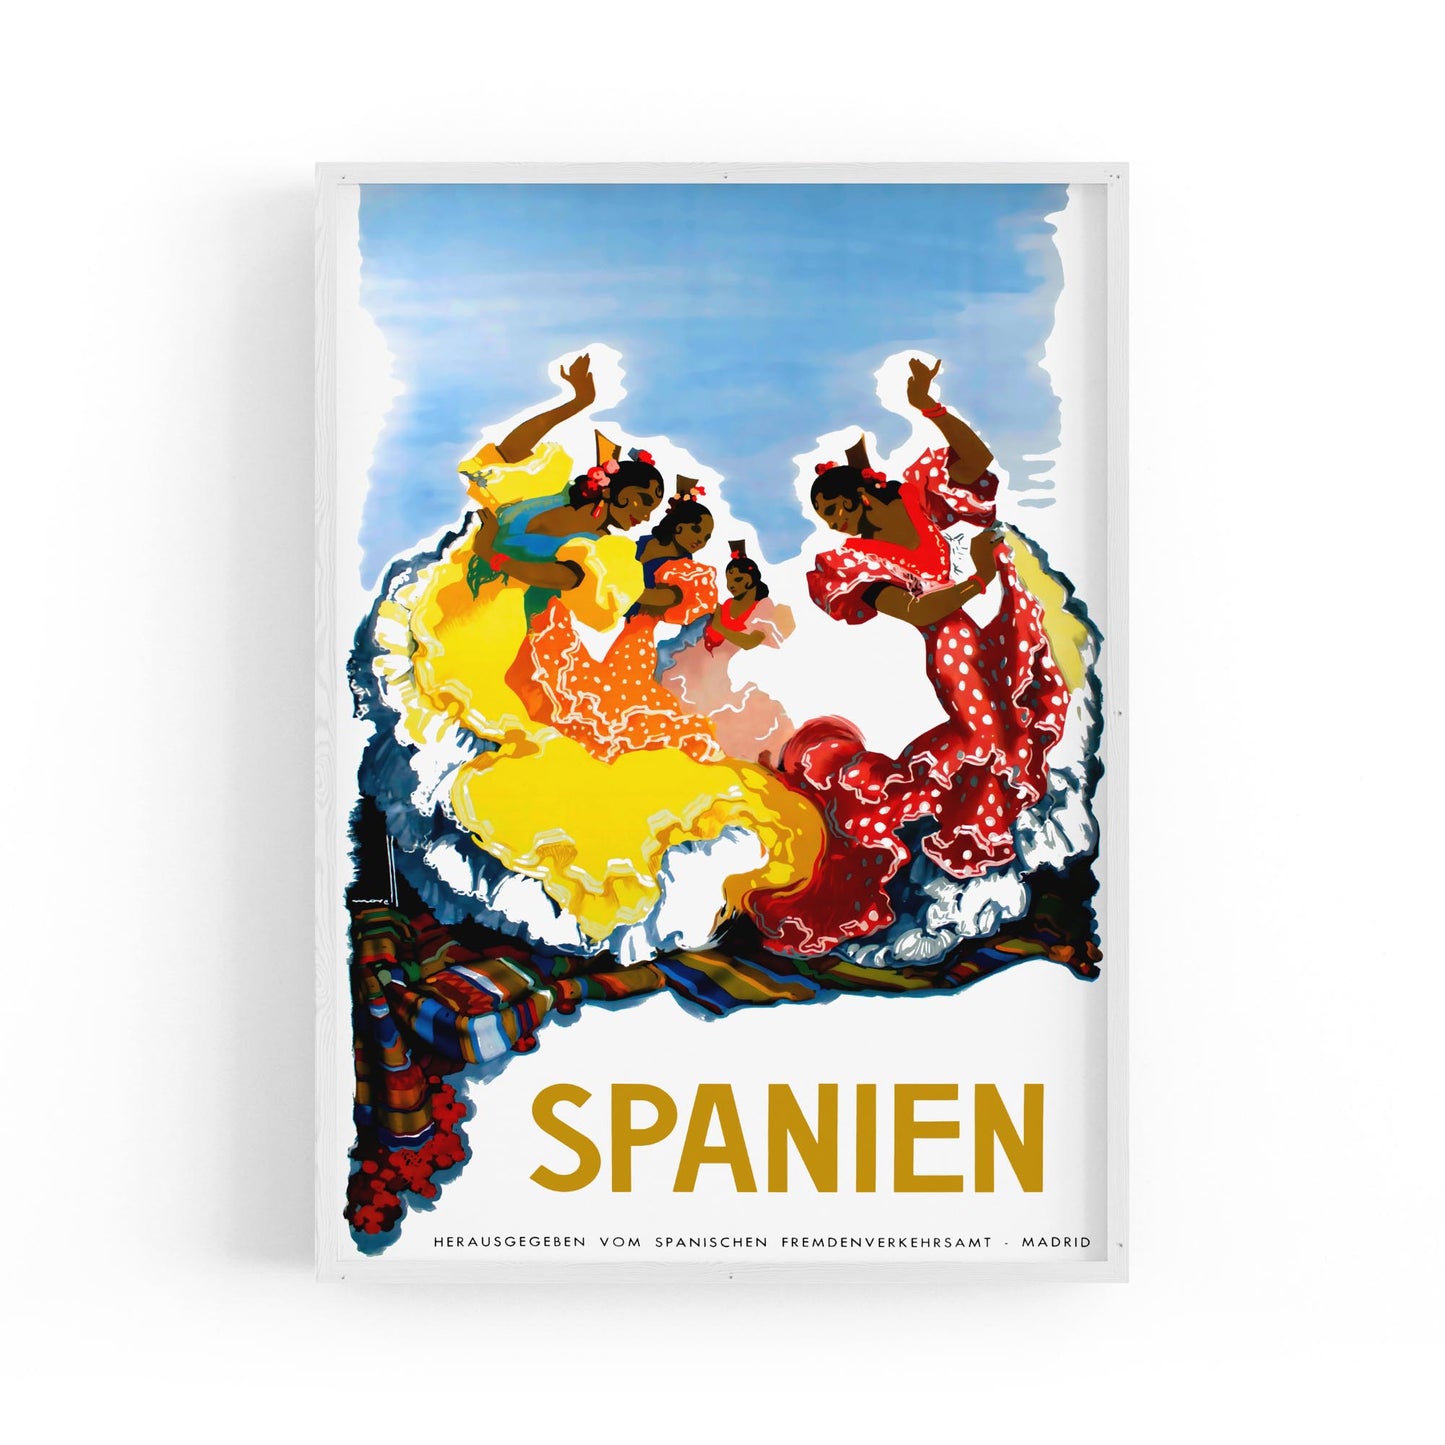 Flamenco Dancers, Spain | Framed Vintage Travel Poster